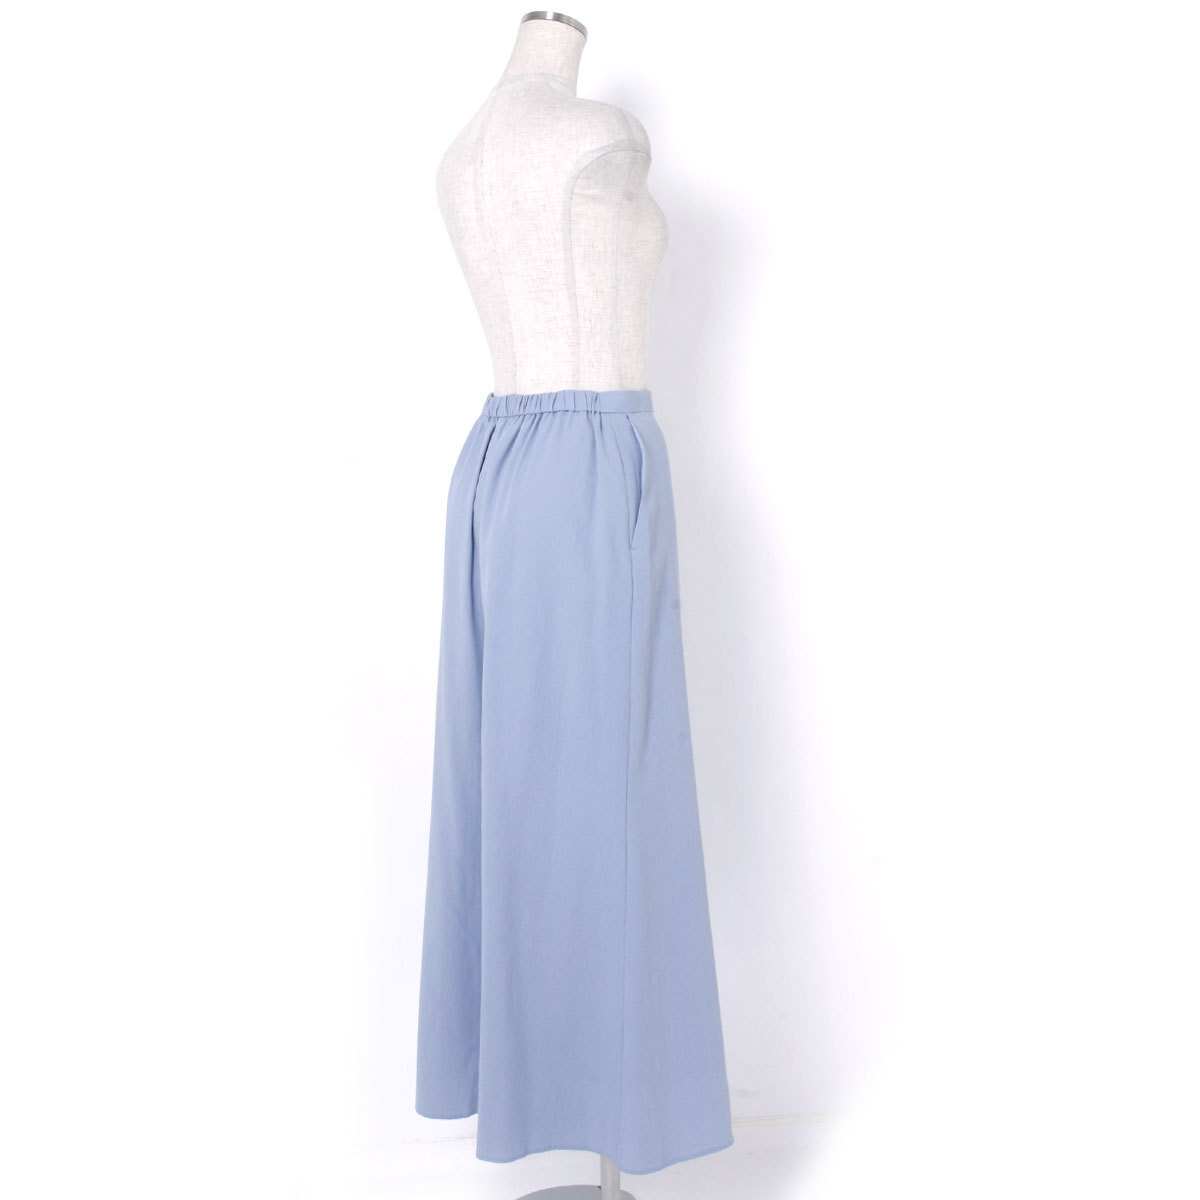 ELENDEEK SOFT MERMAID SK ソフトマーメードスカート 定価18,480円 size02 アイスブルー エレンディーク_画像6